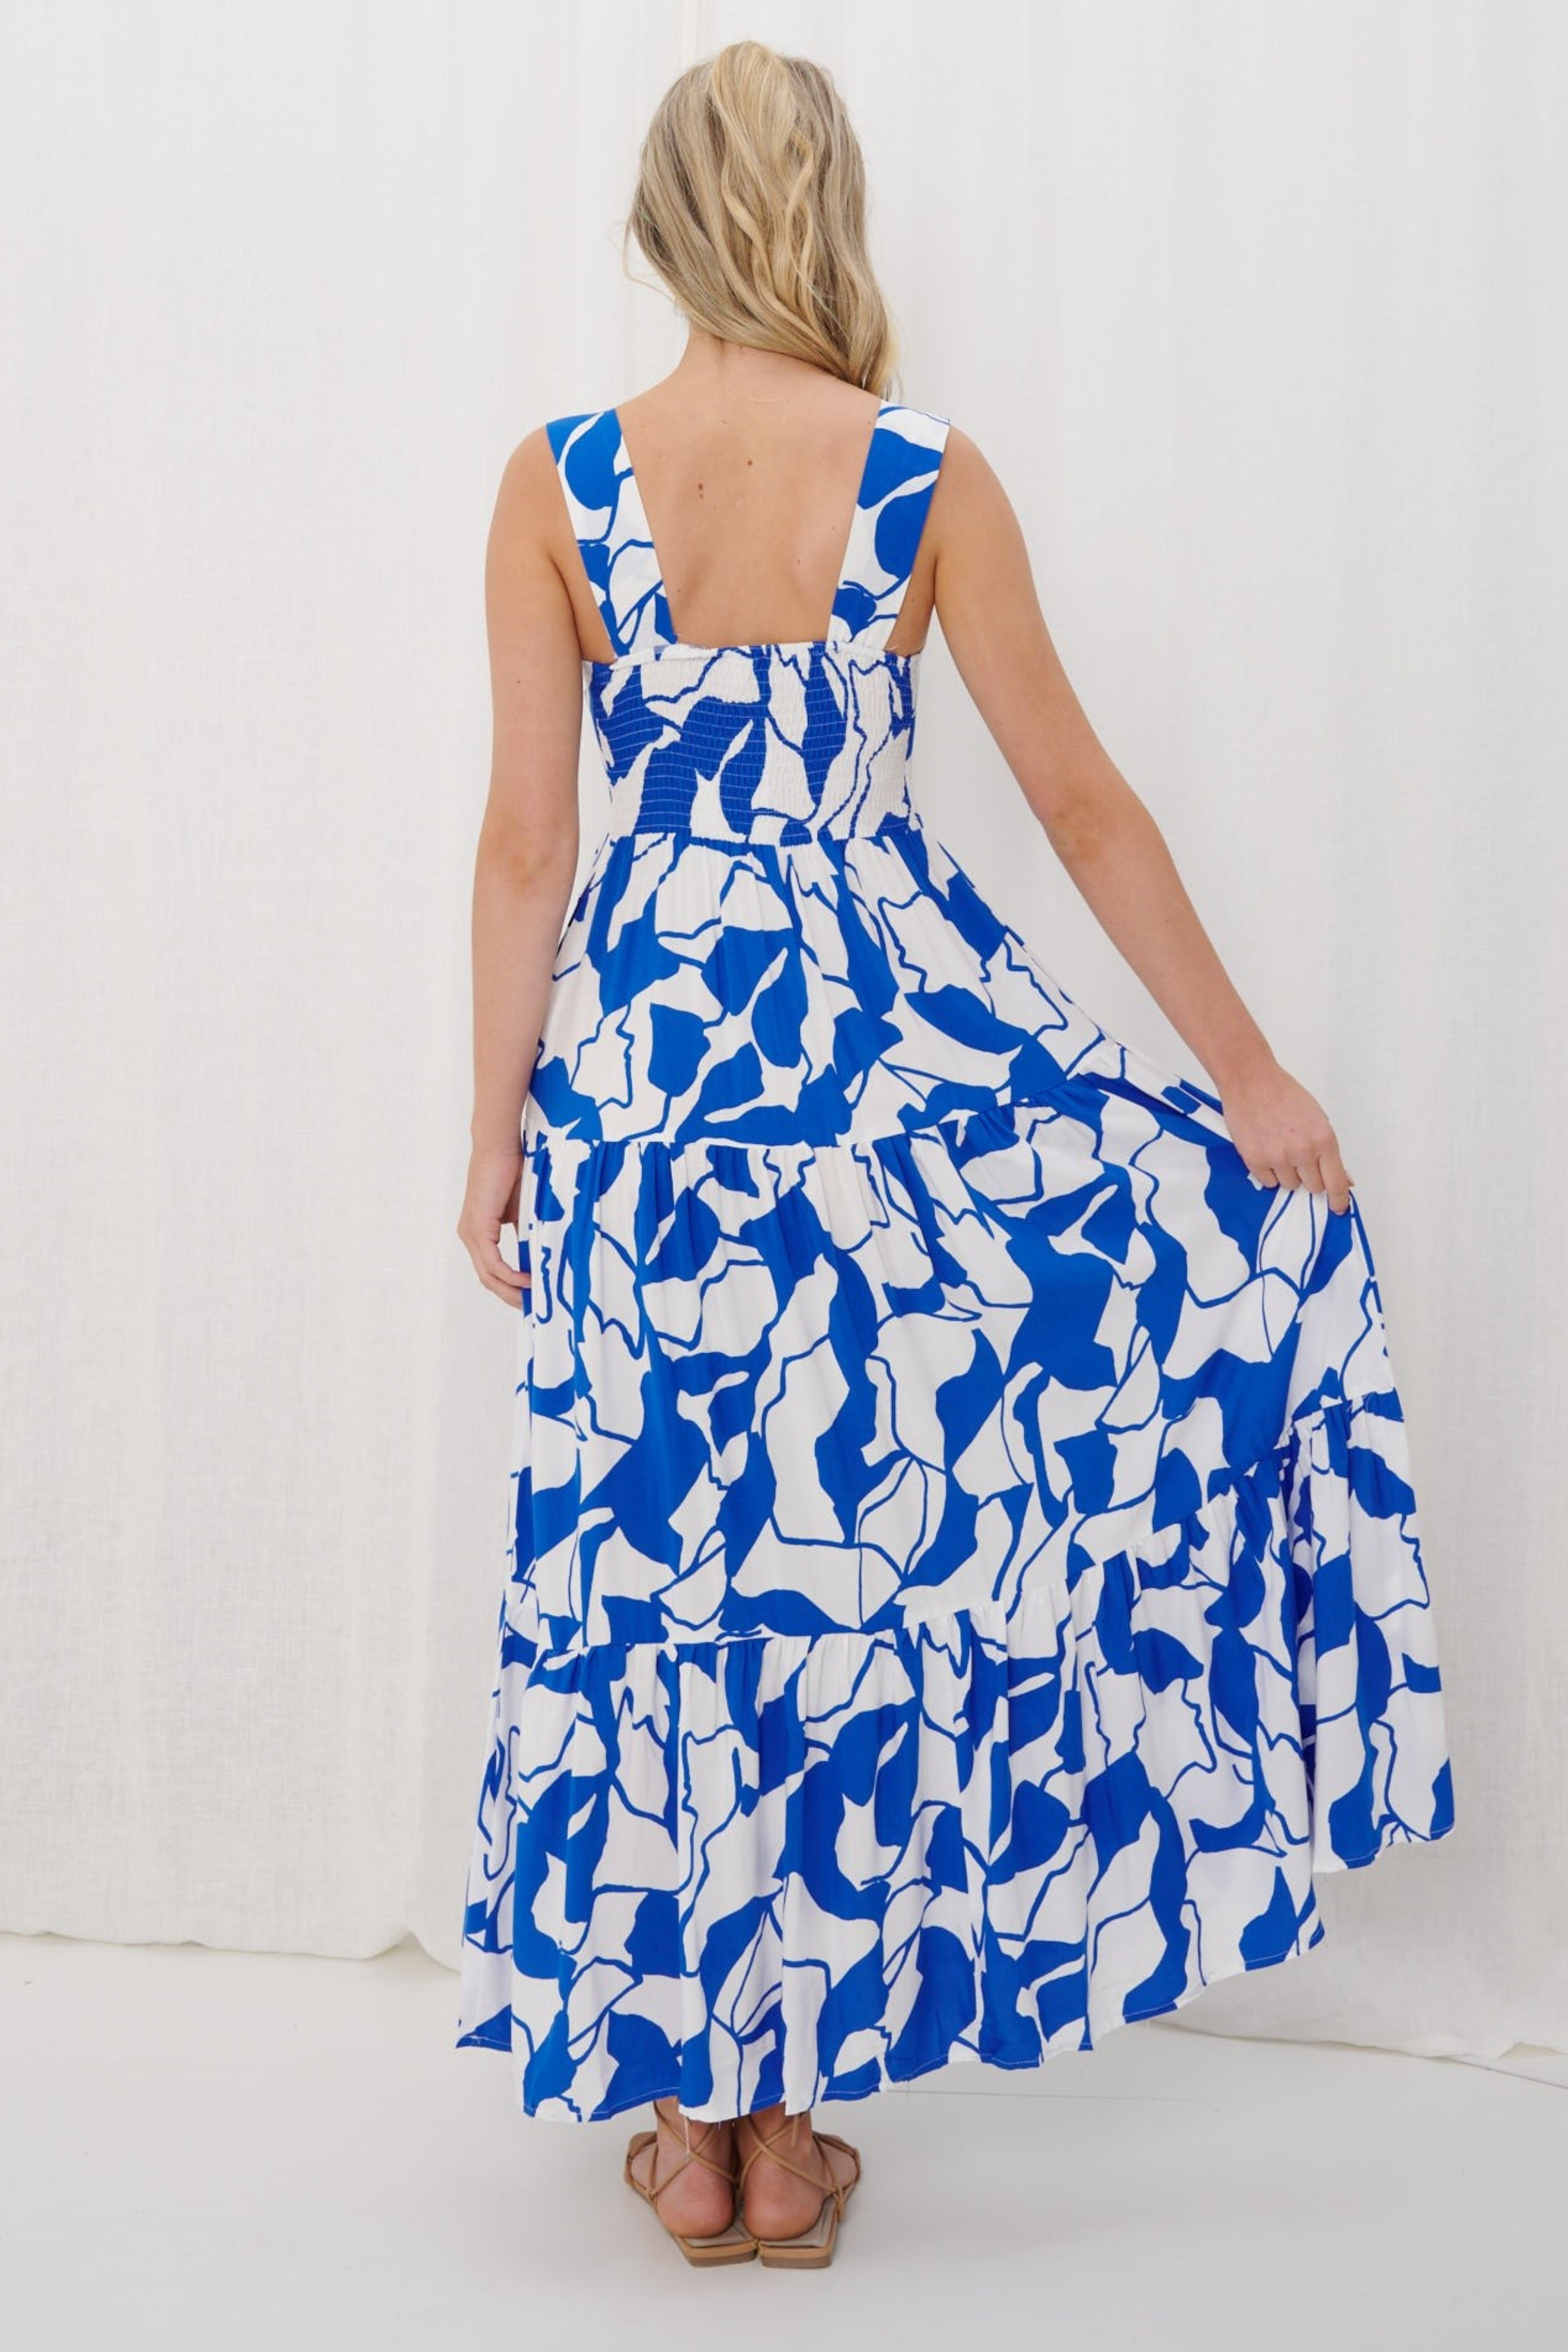 LUNA Maxi Dress in Blue and White